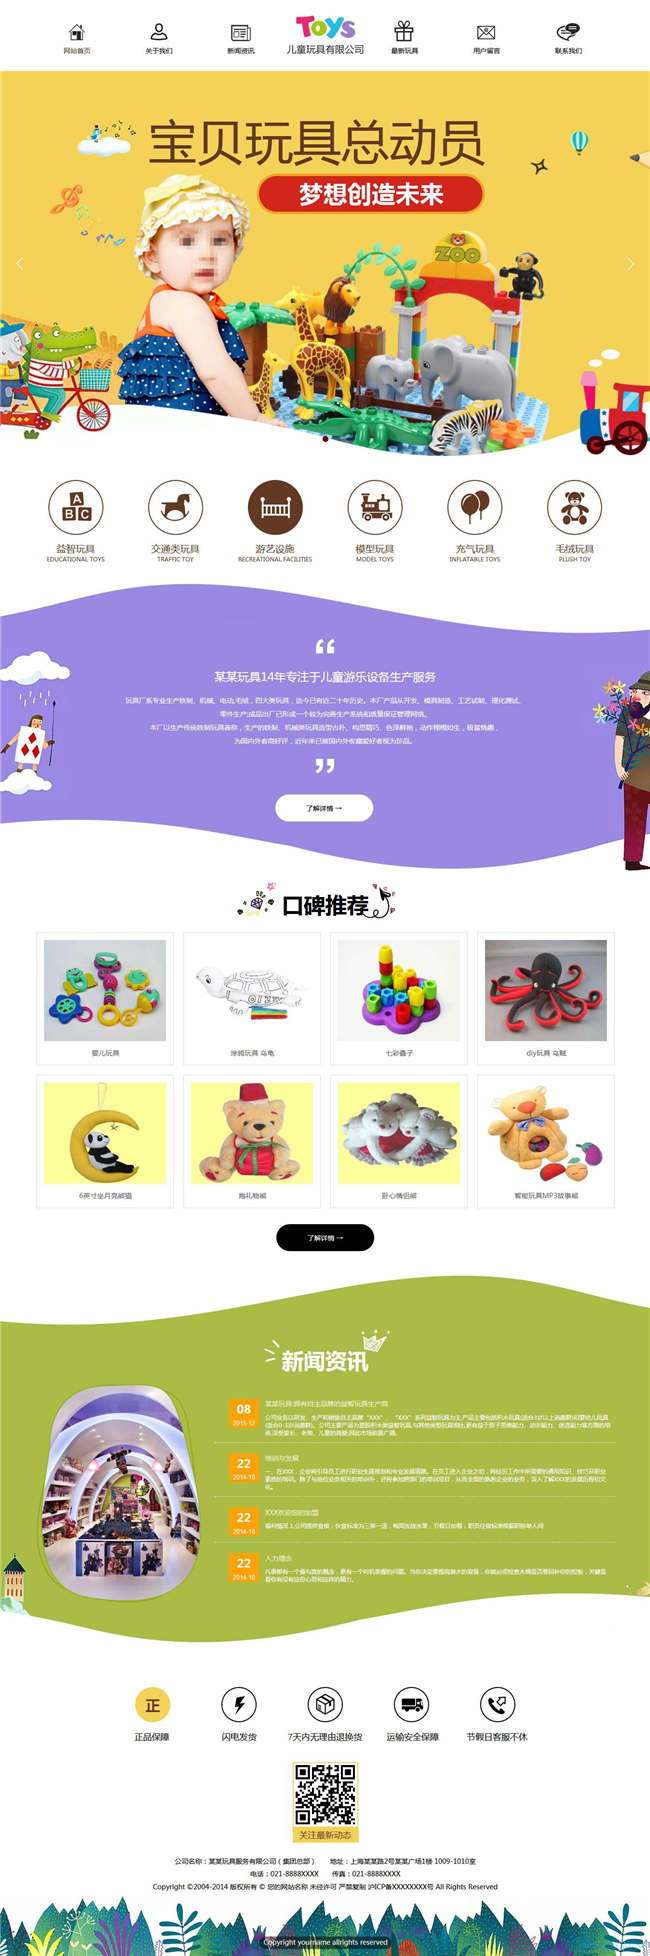 玩具公司礼品工艺品玩具小商品网站Wordpress模板(带手机站)预览图